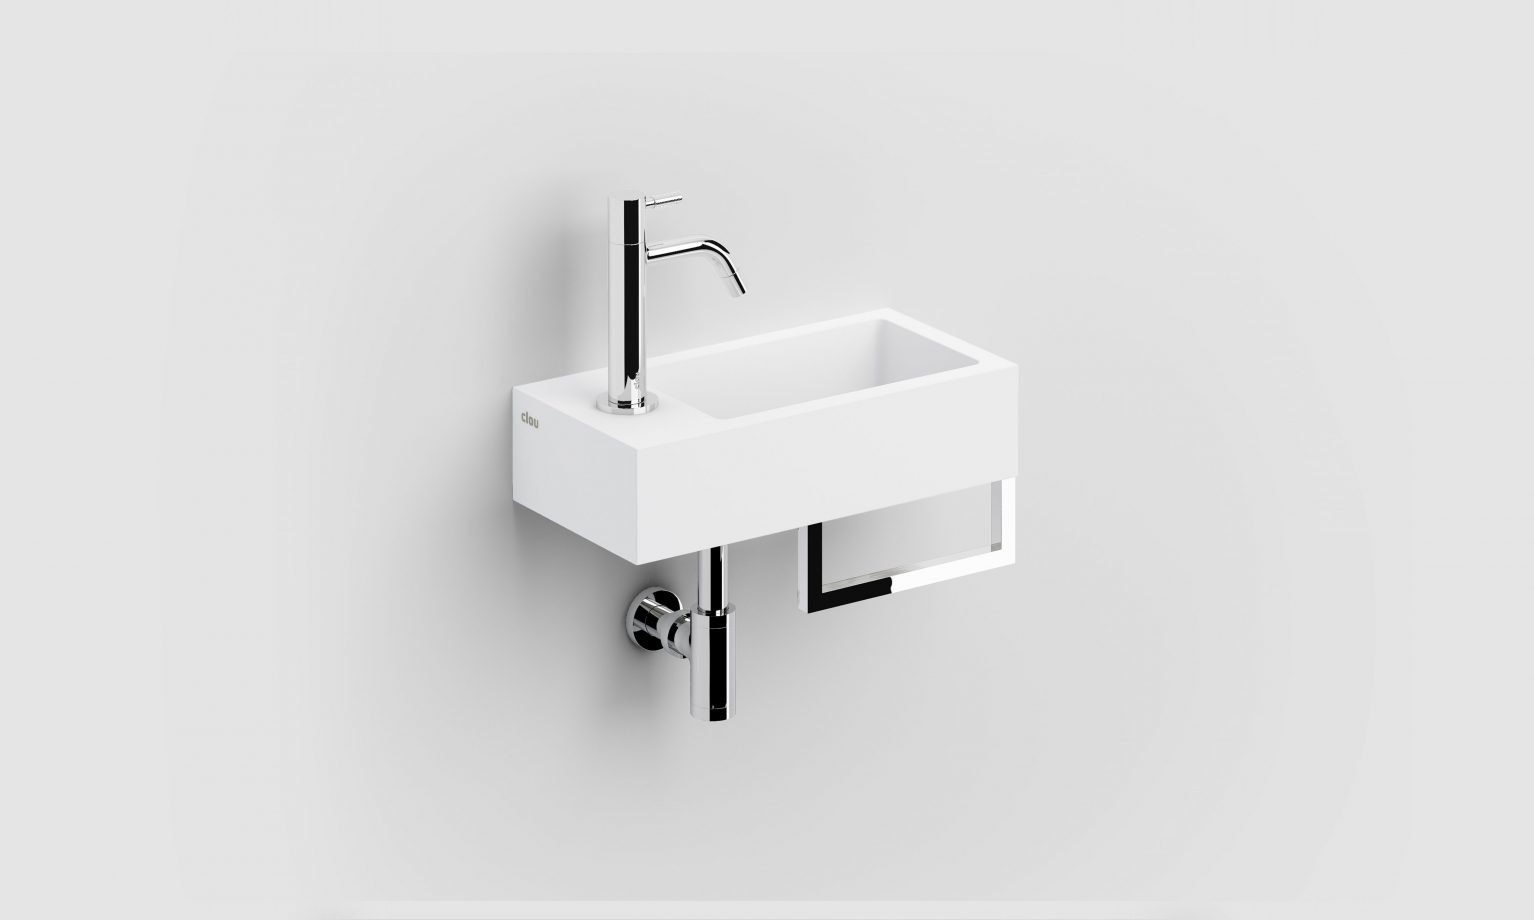 Concessie Eerlijk magneet CL/03.13032.02 - Clou bath findings - Sanitair voor design badkamers